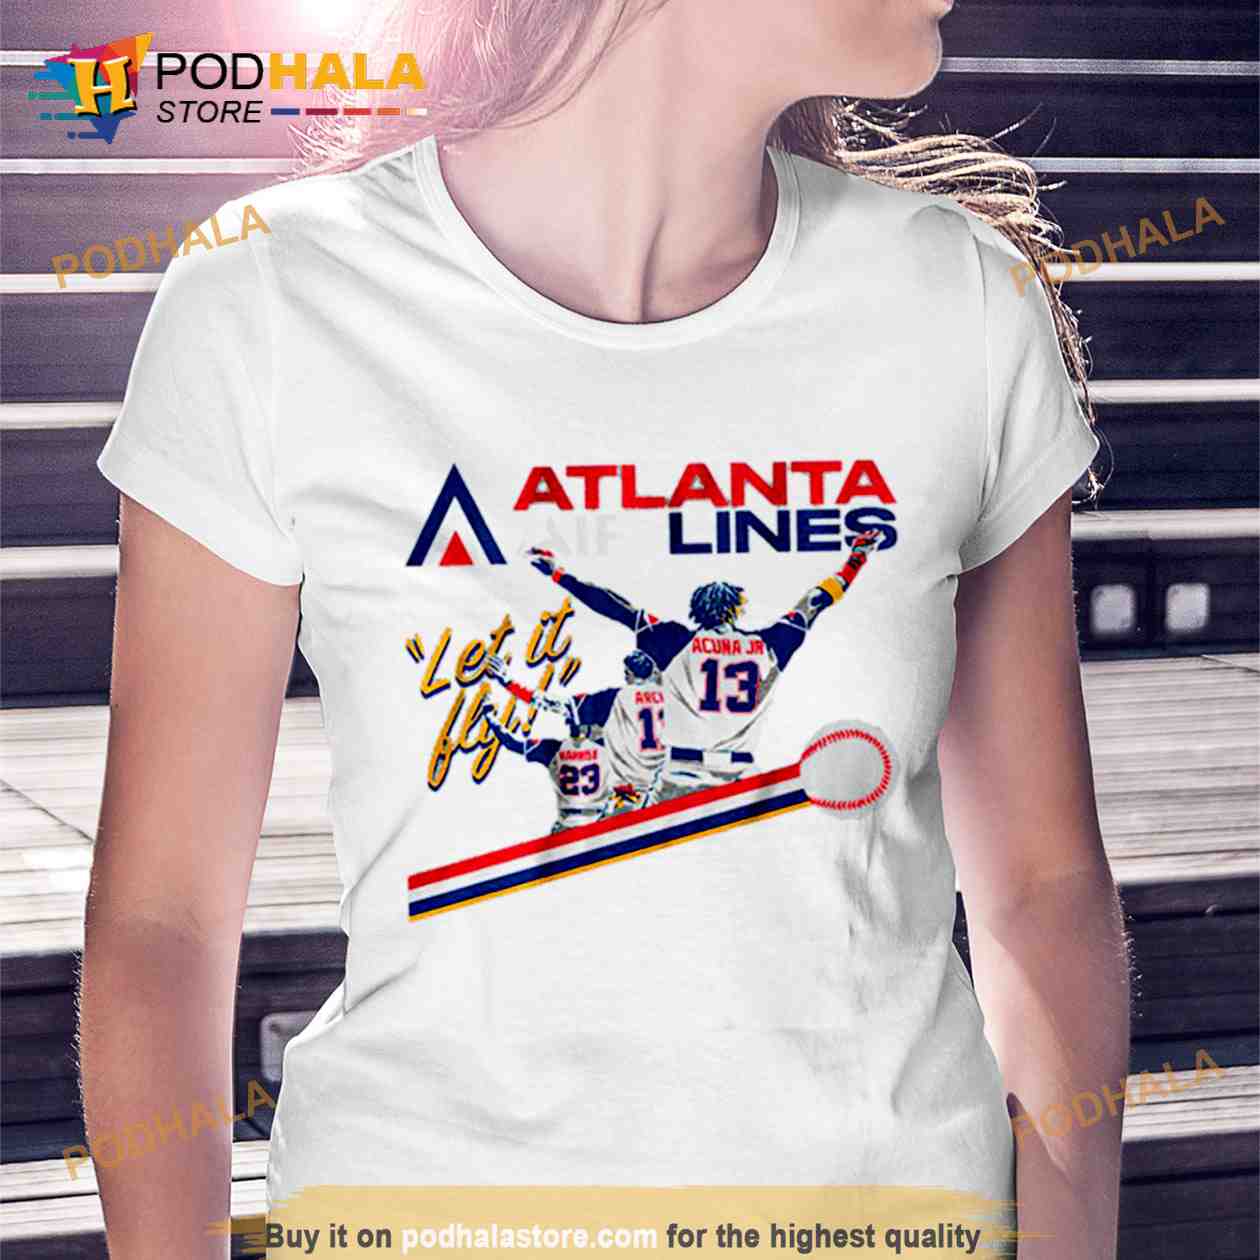 Atlanta Airlines Let It Fly Atlanta Braves shirt, hoodie, sweater